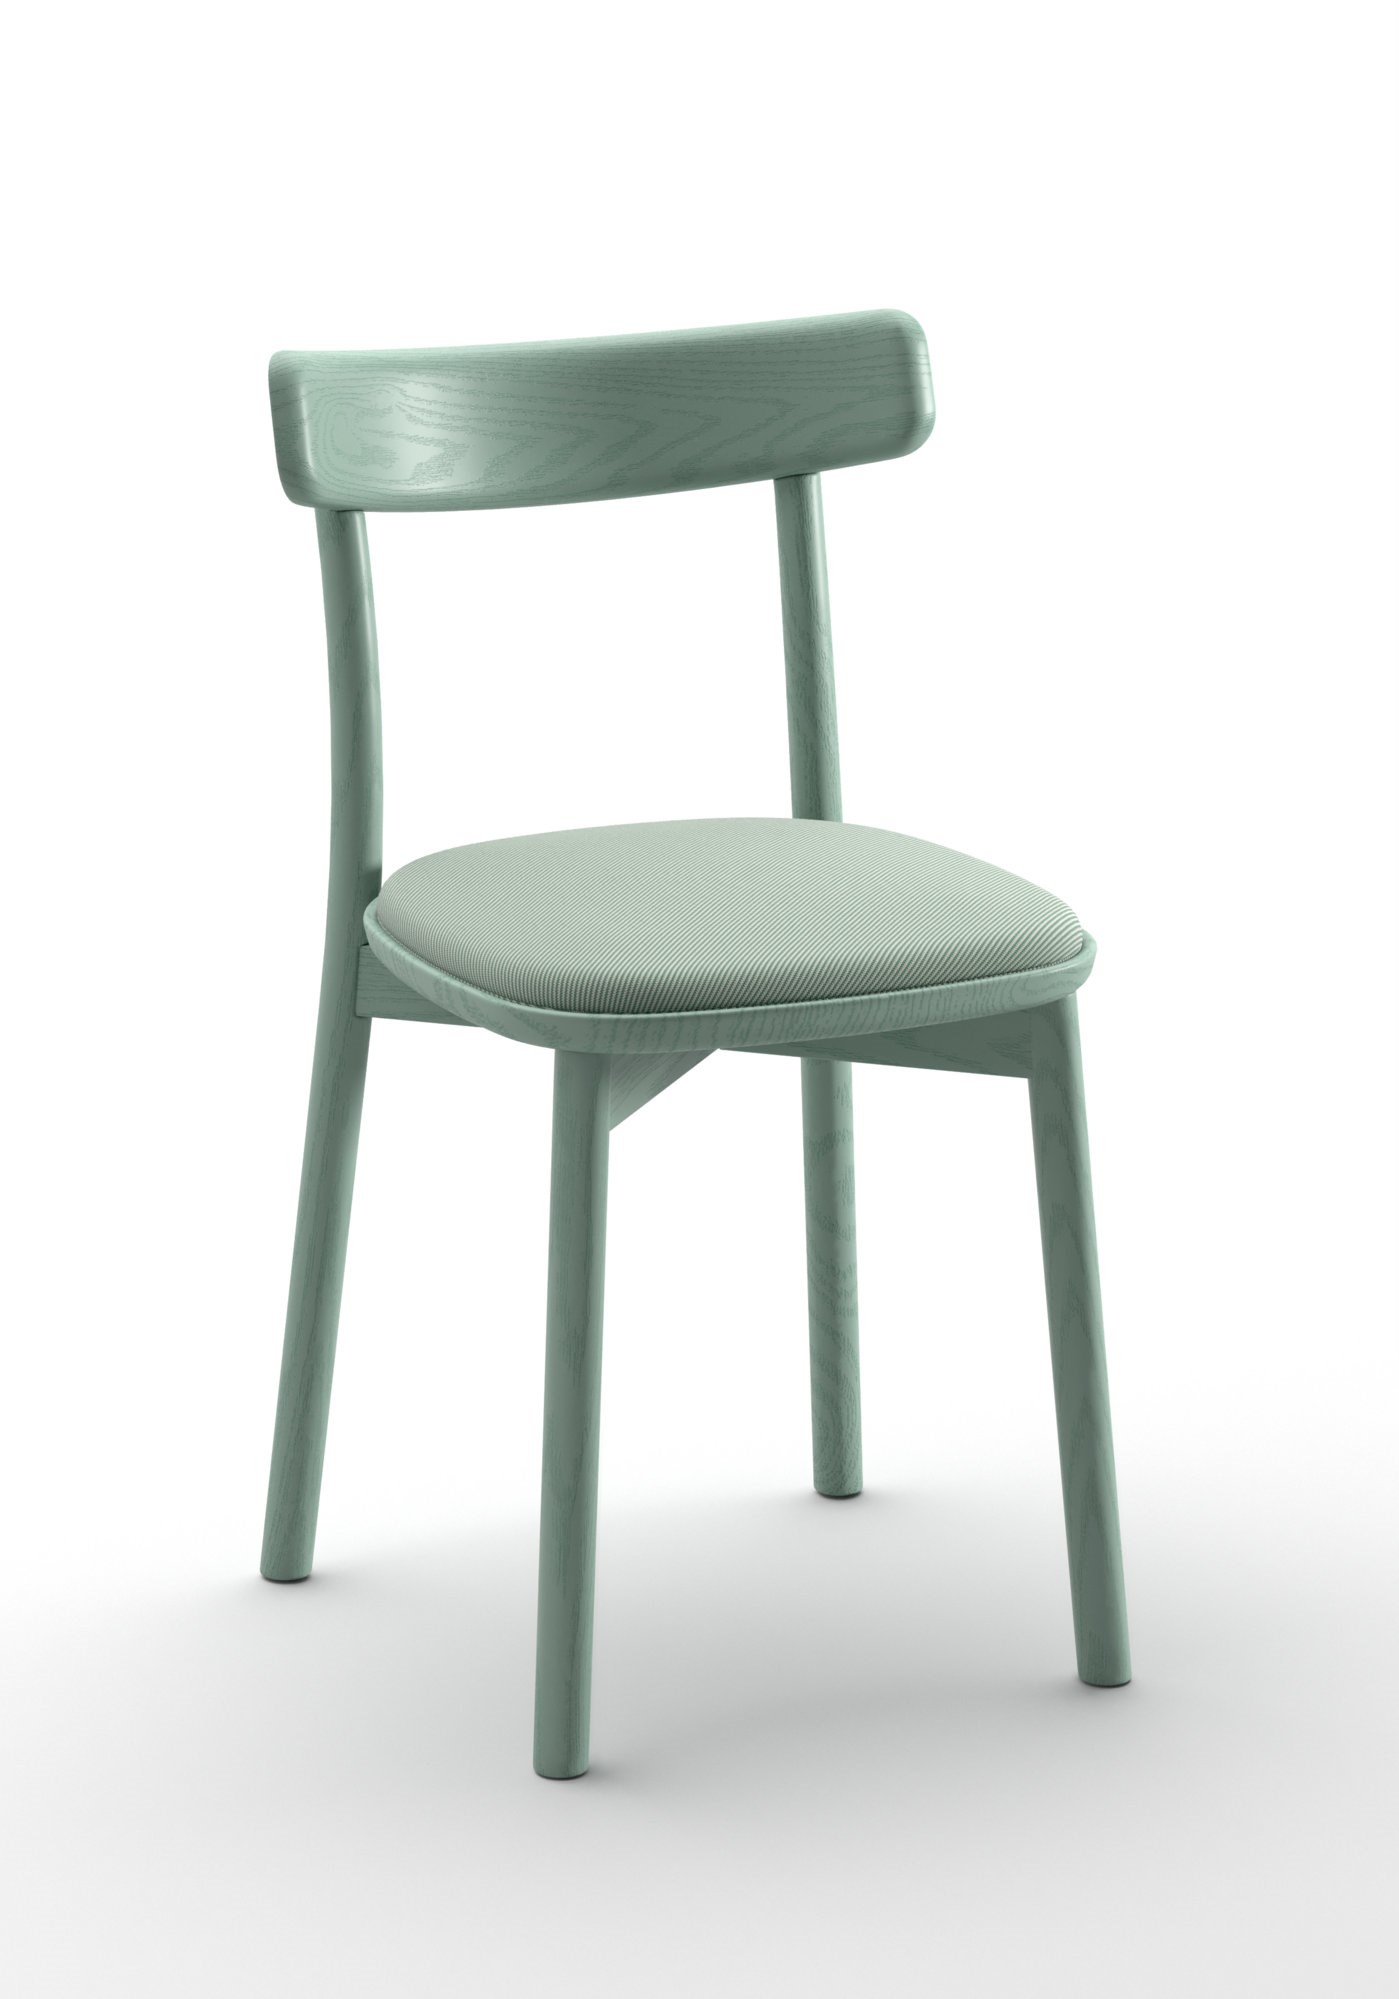 Chair 153